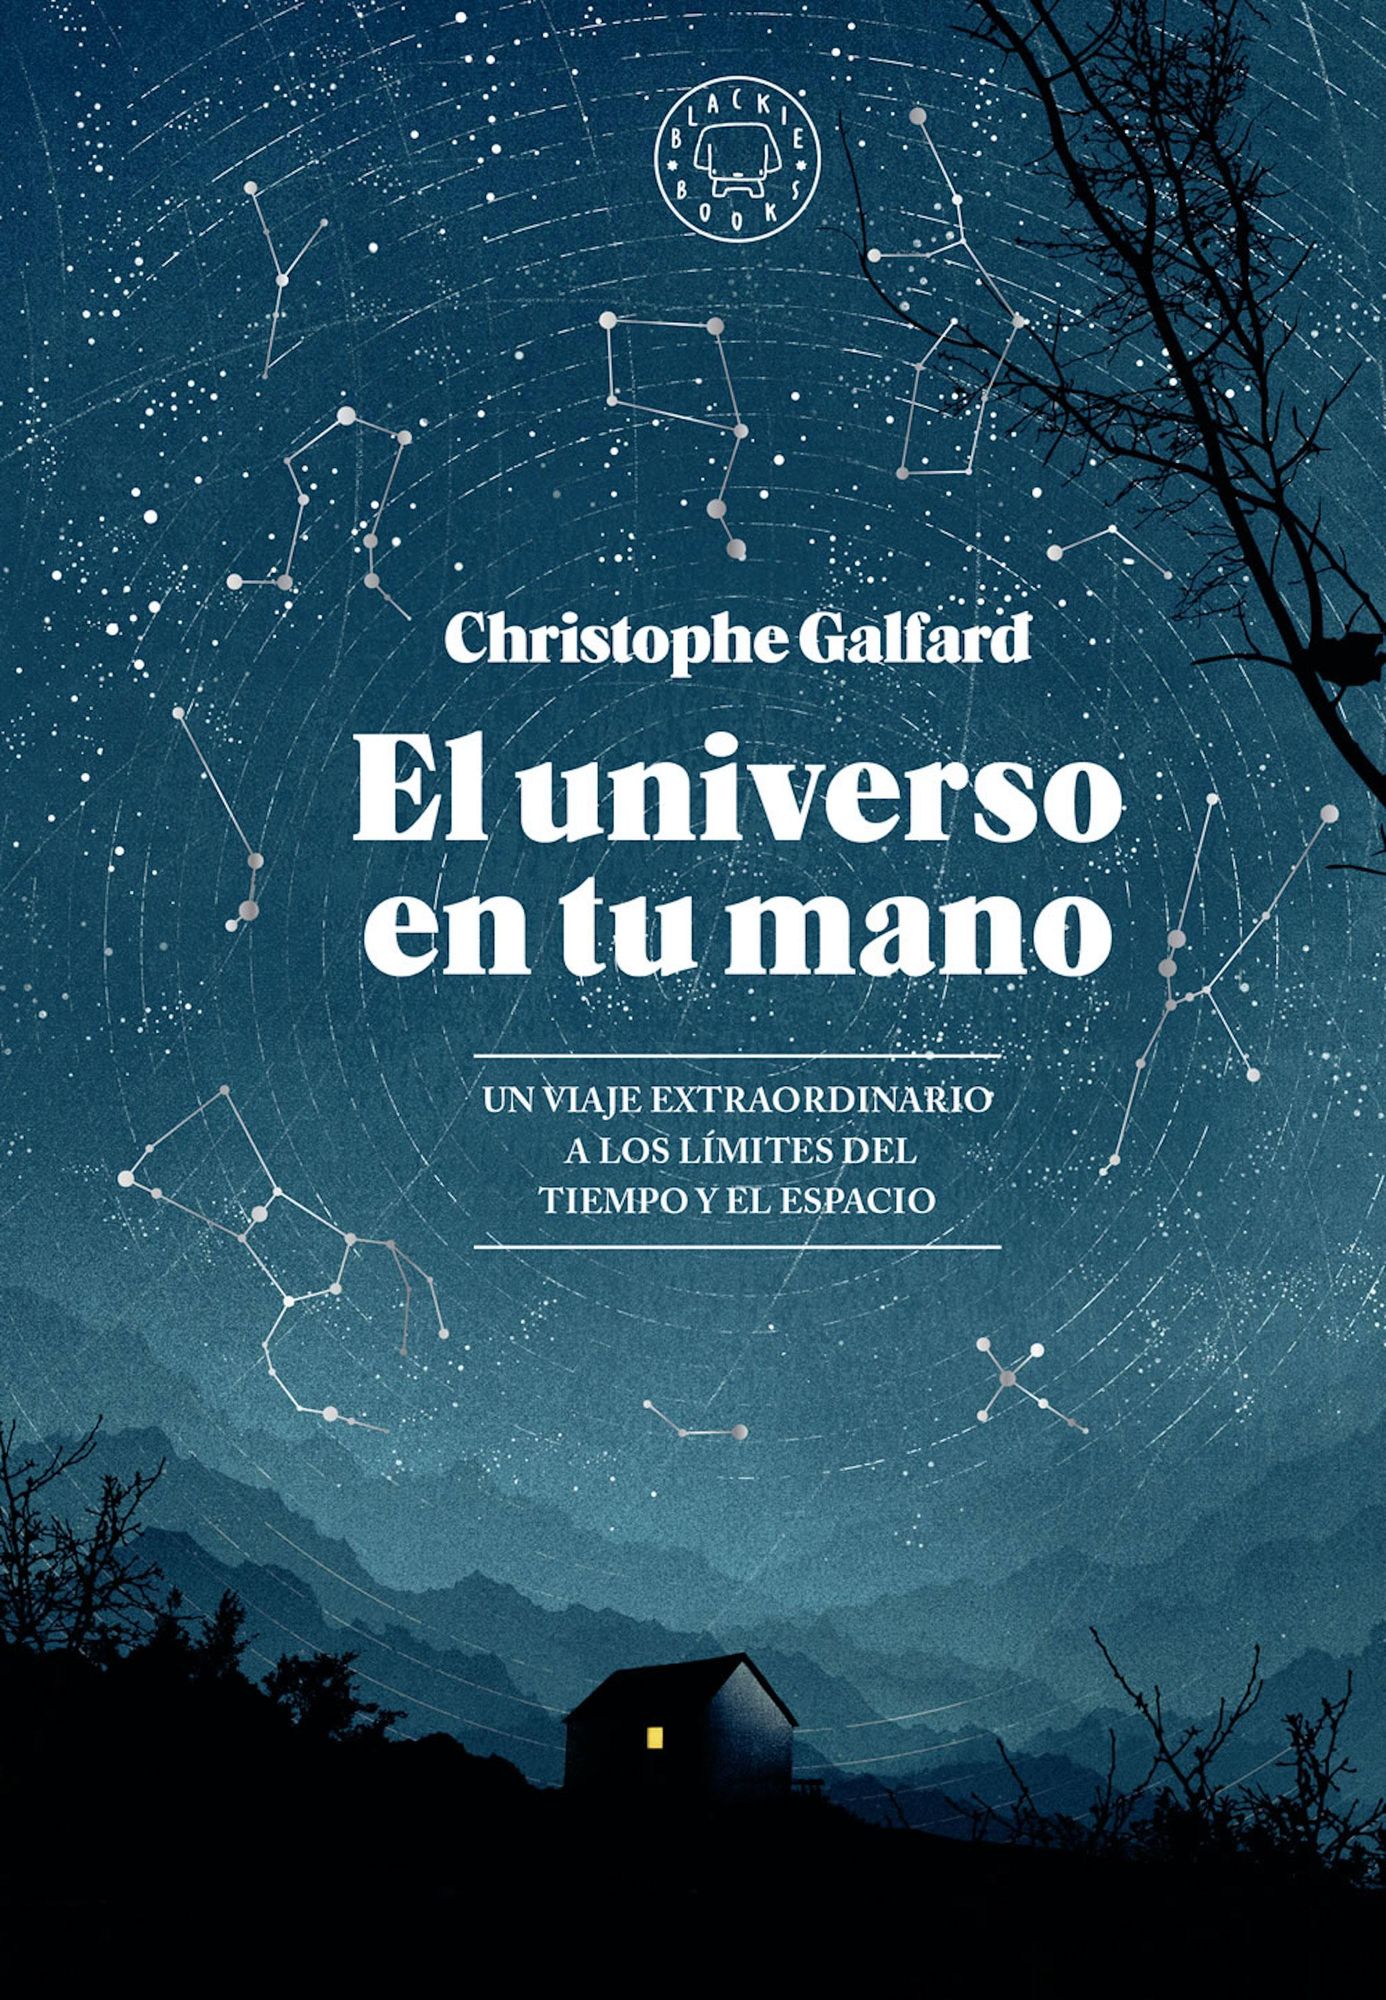 El universo en tu mano' von 'Christophe Galfard' - eBook